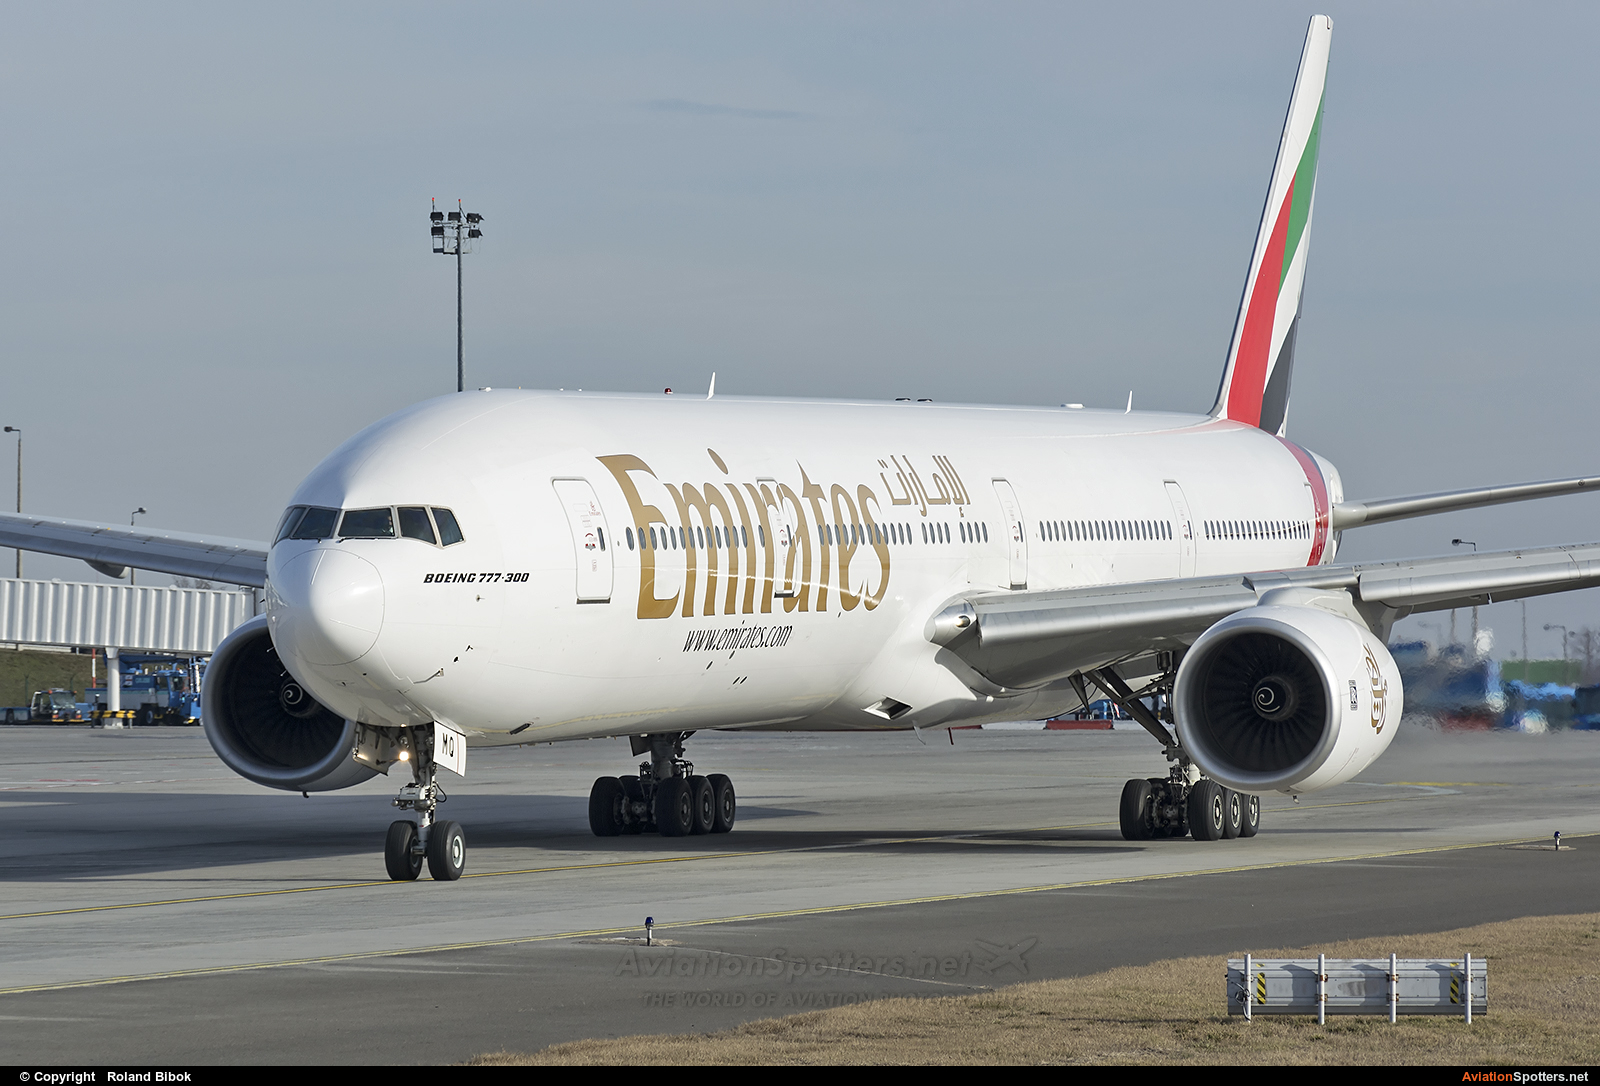 Emirates Airlines  -  777-300  (A6-EMQ) By Roland Bibók (Roland Bibok)